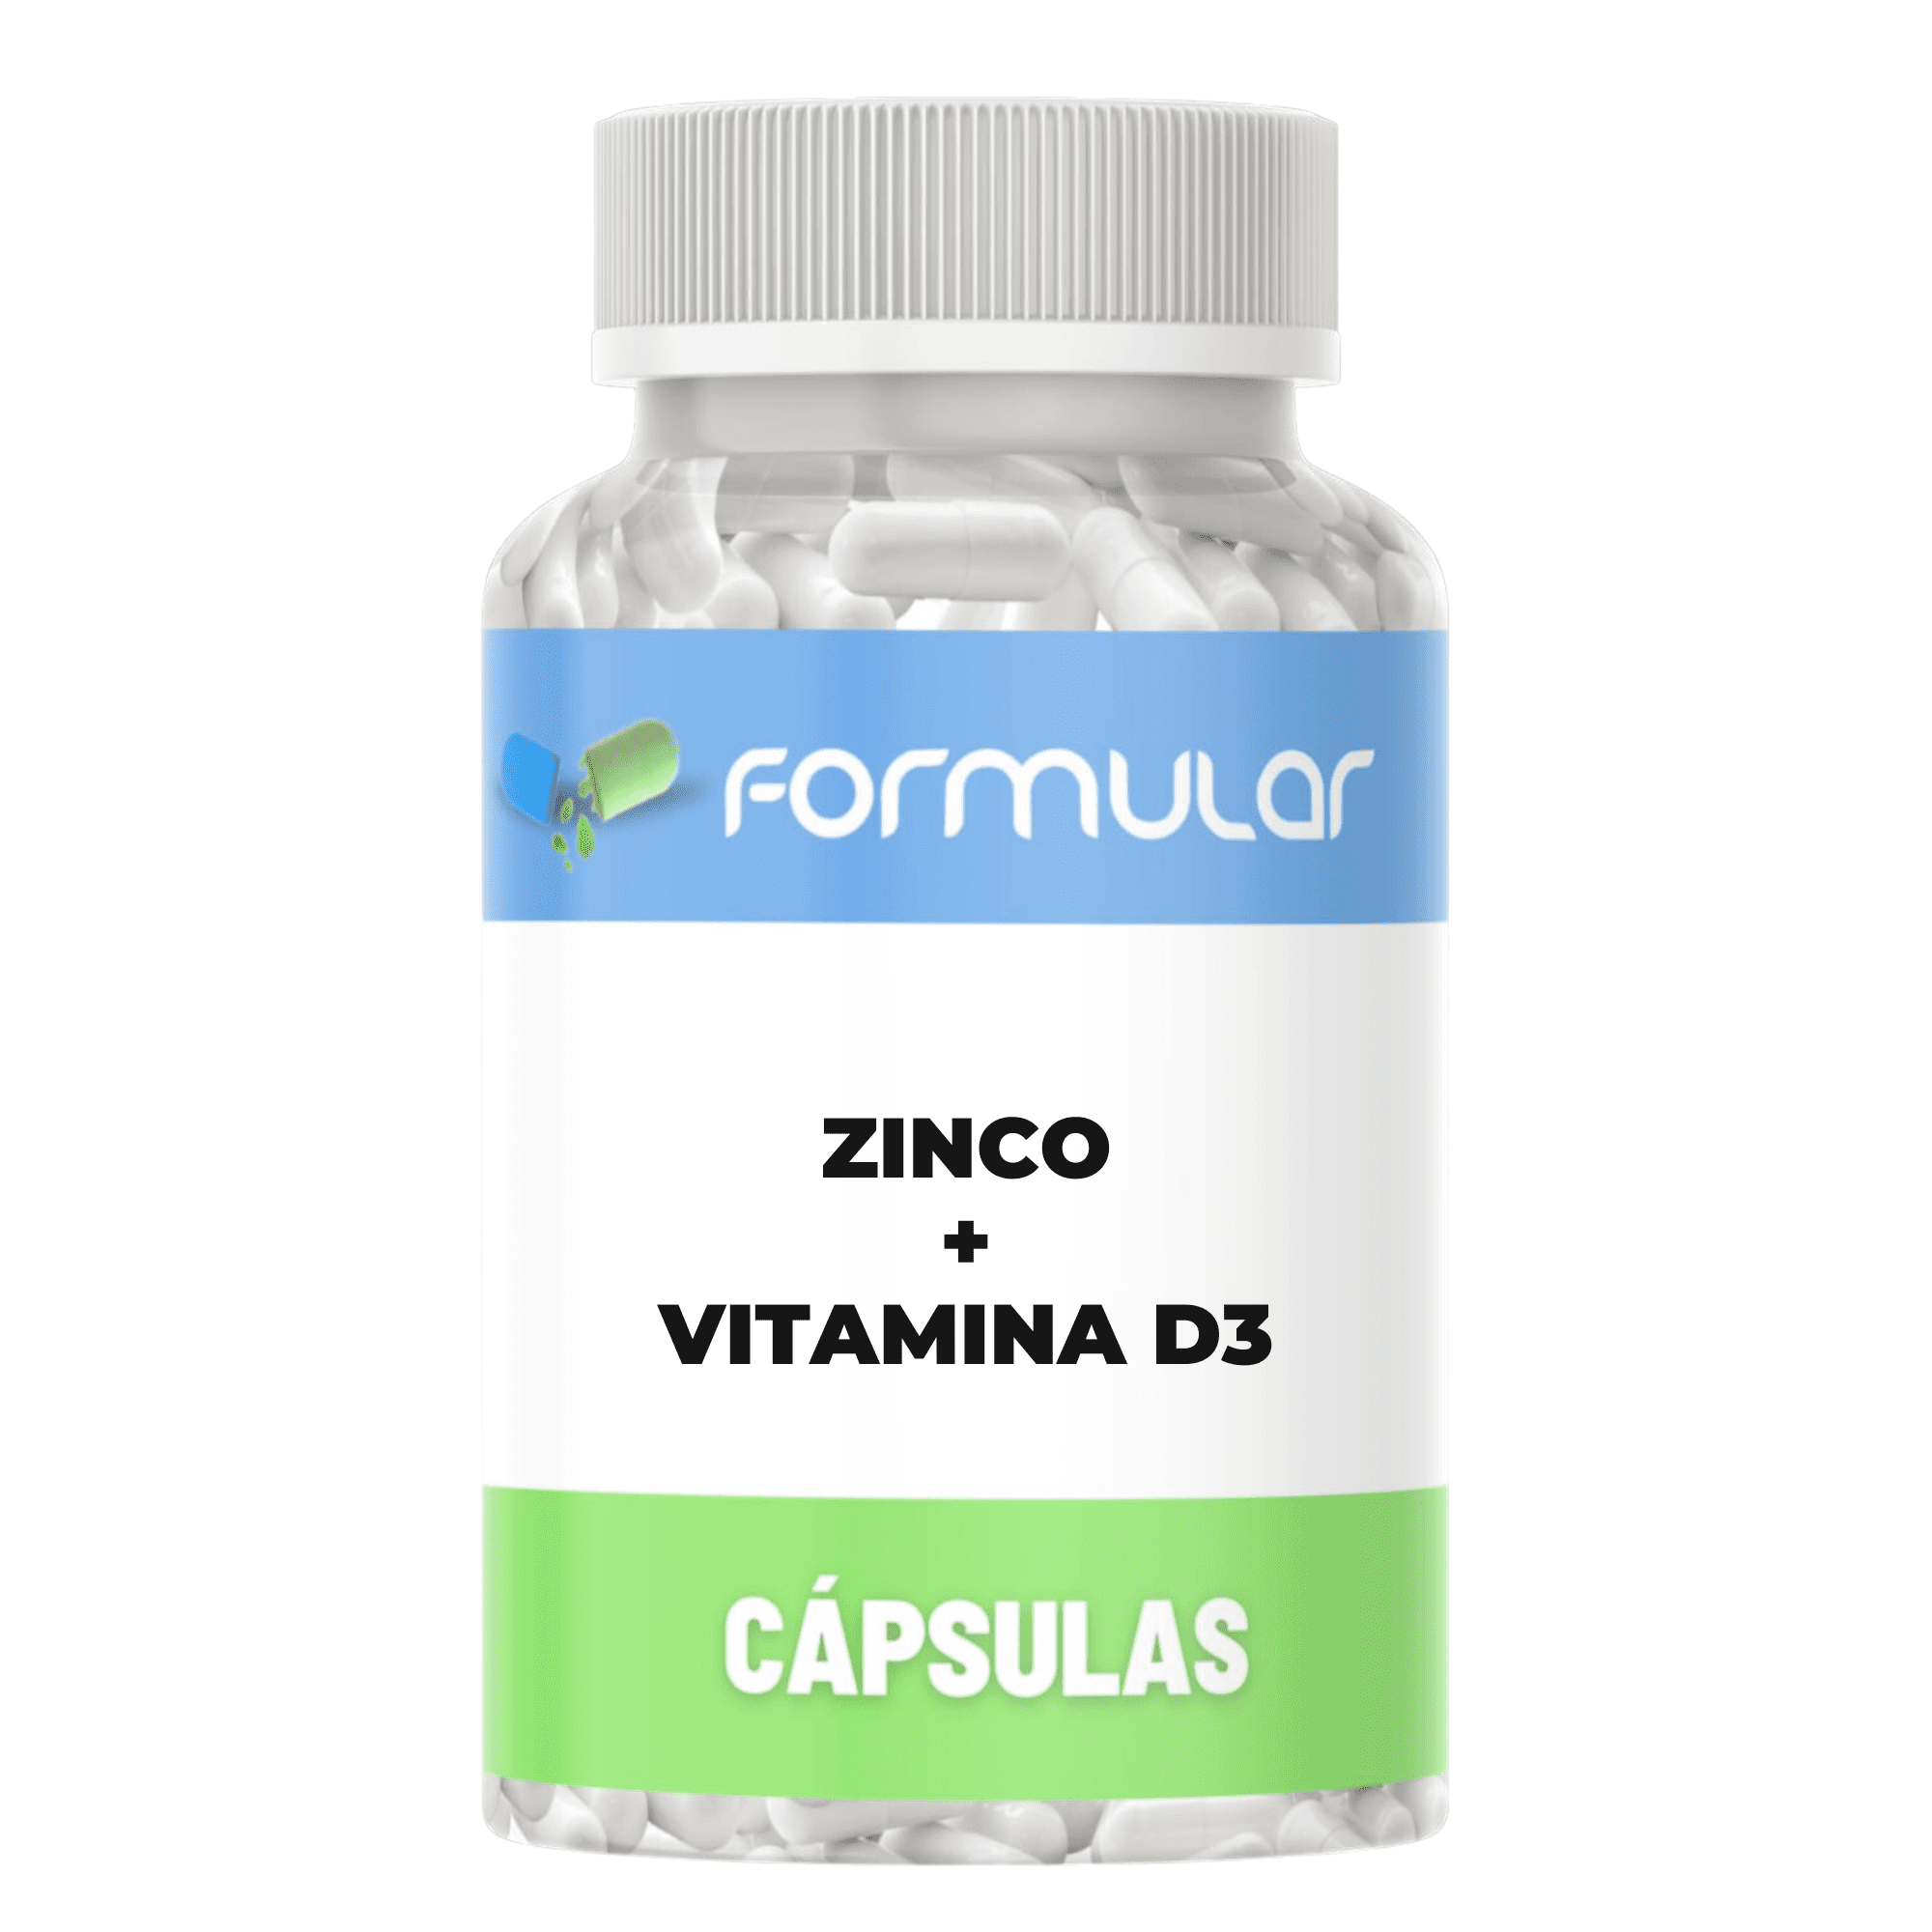 Zinco 50Mg + Vitamina D3 2.000Ui - Cápsulas - AUMENTO DA IMUNIDADE